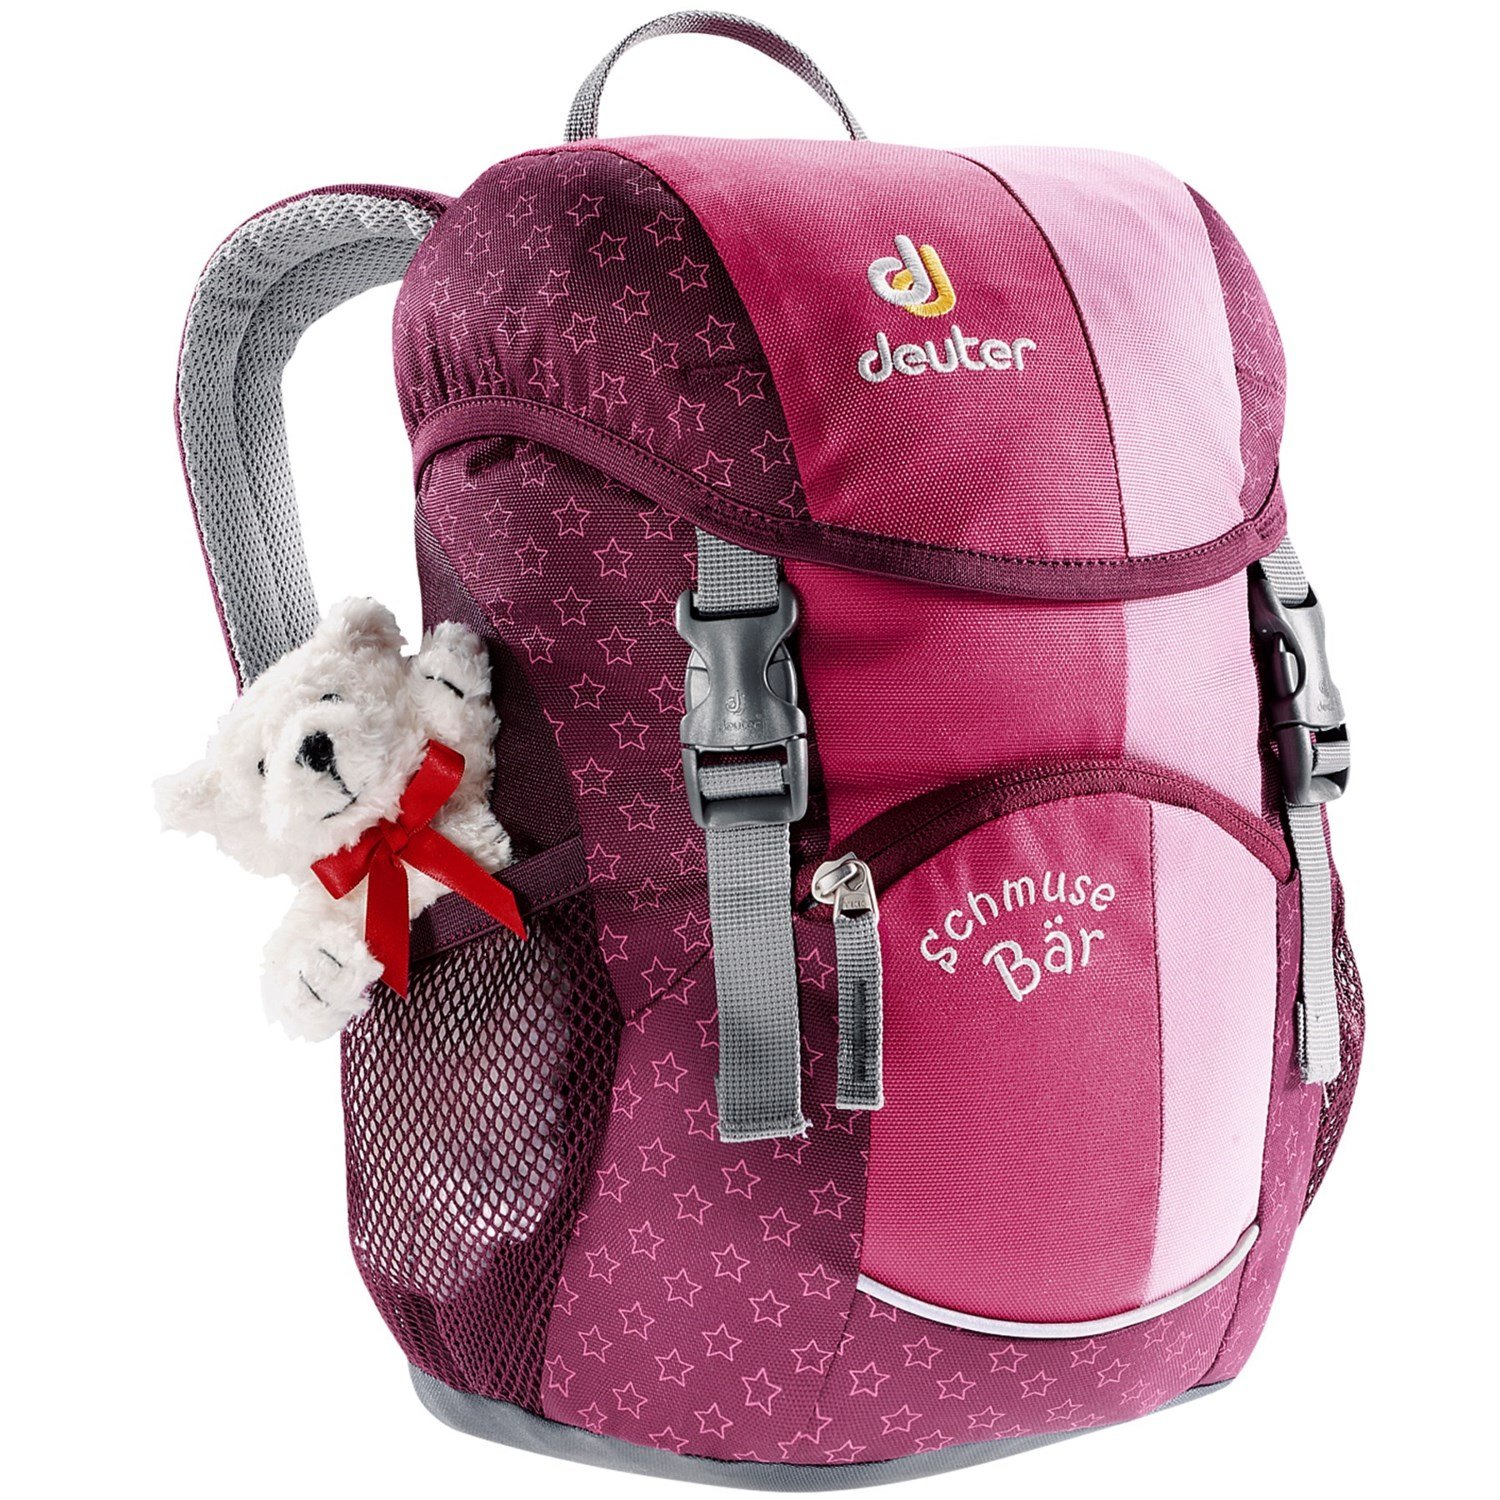 Велосипедный рюкзак Deuter Schmusebar, детский, 34х20х16, 8 л, розовый, 36003_5040 spiegelburg рюкзак для детского сада t rex world 11674